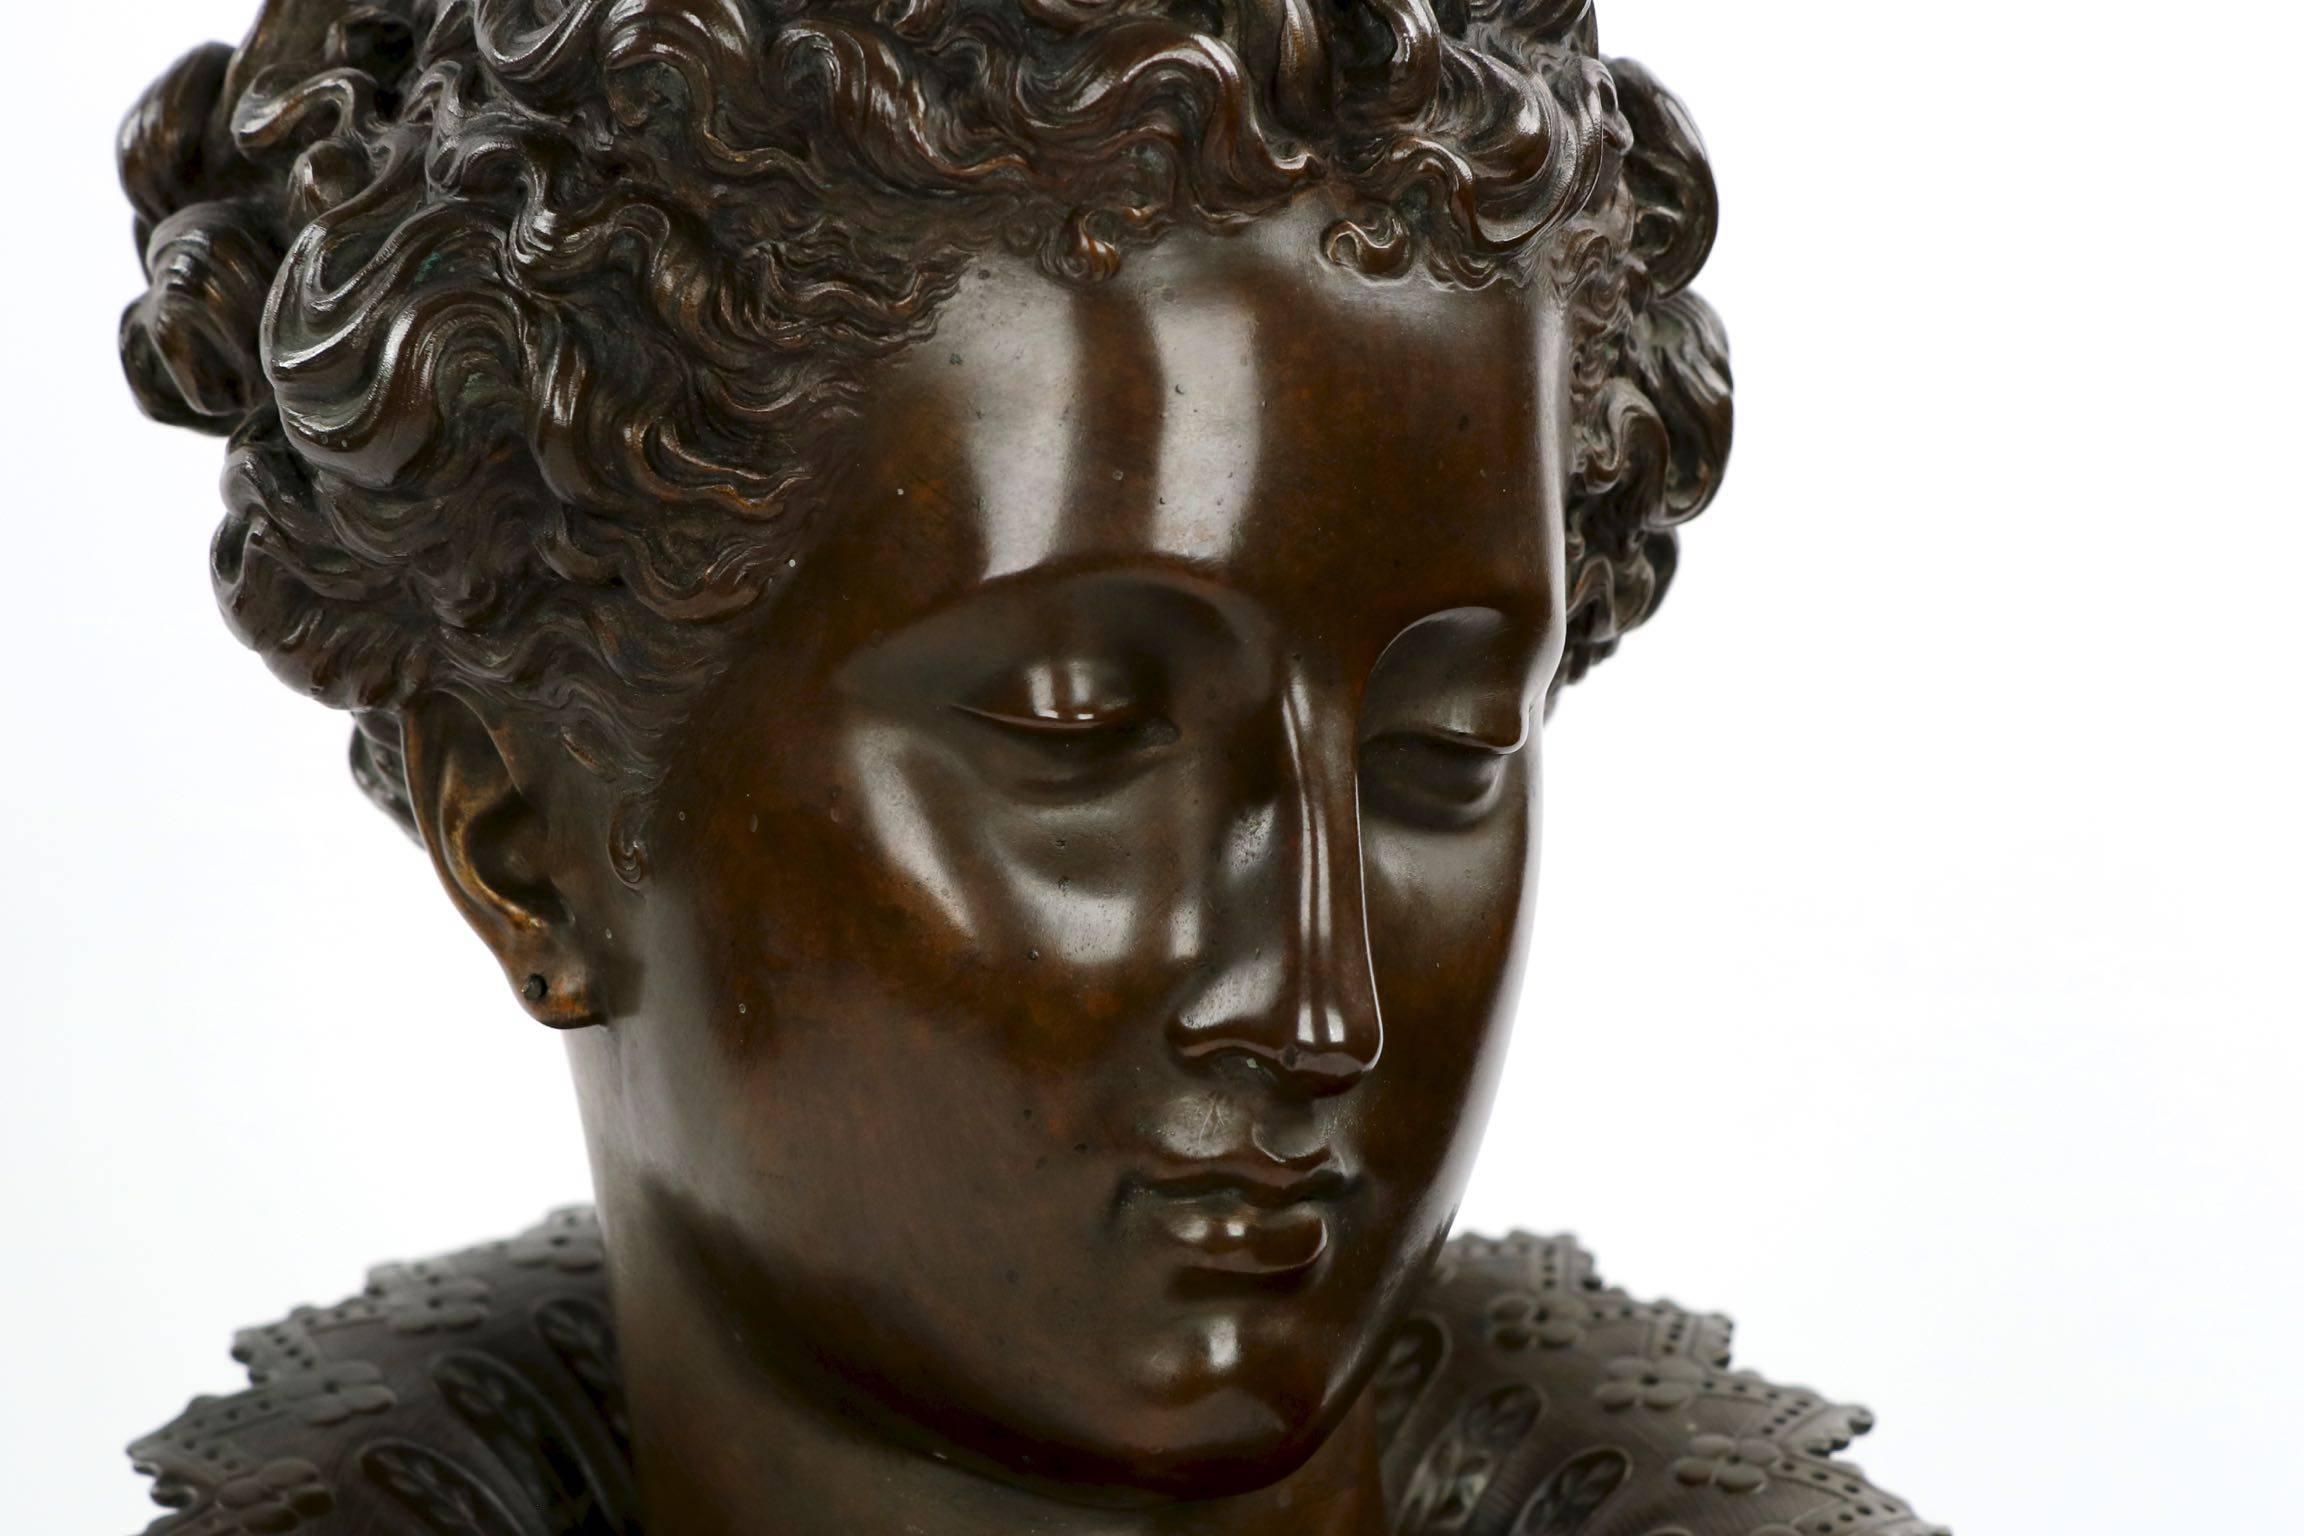 French Pair of Mathurin Moreau Renaissance Bronze Sculpture Busts